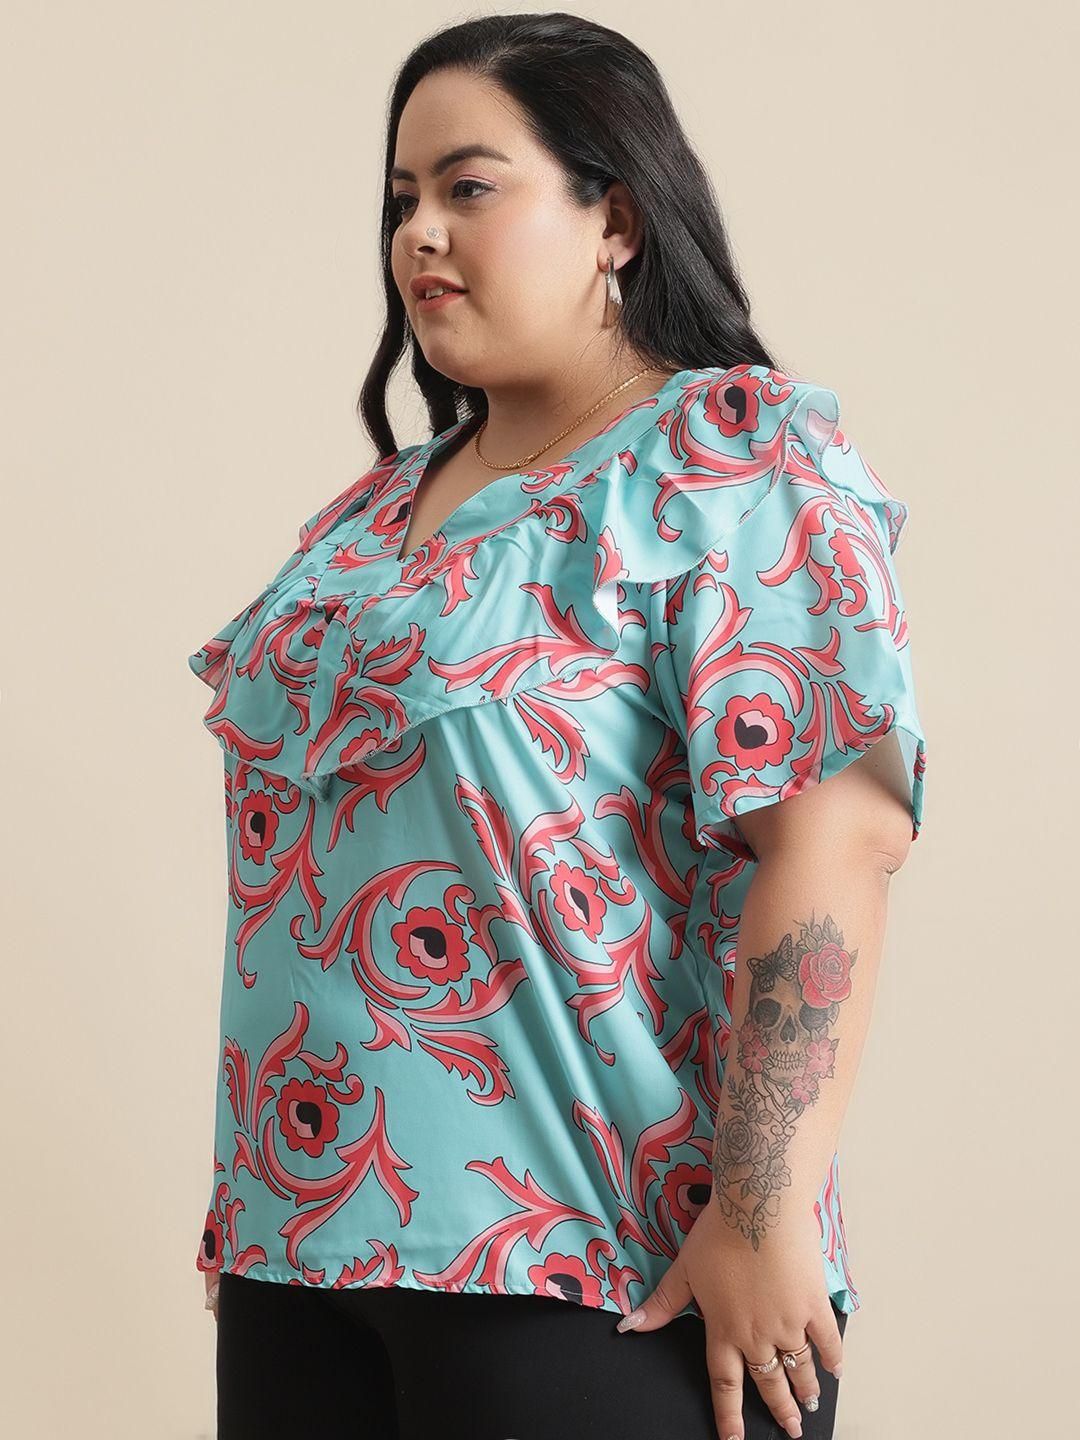 Flambeur Women's Plus Size Printed Half Sleeve Top